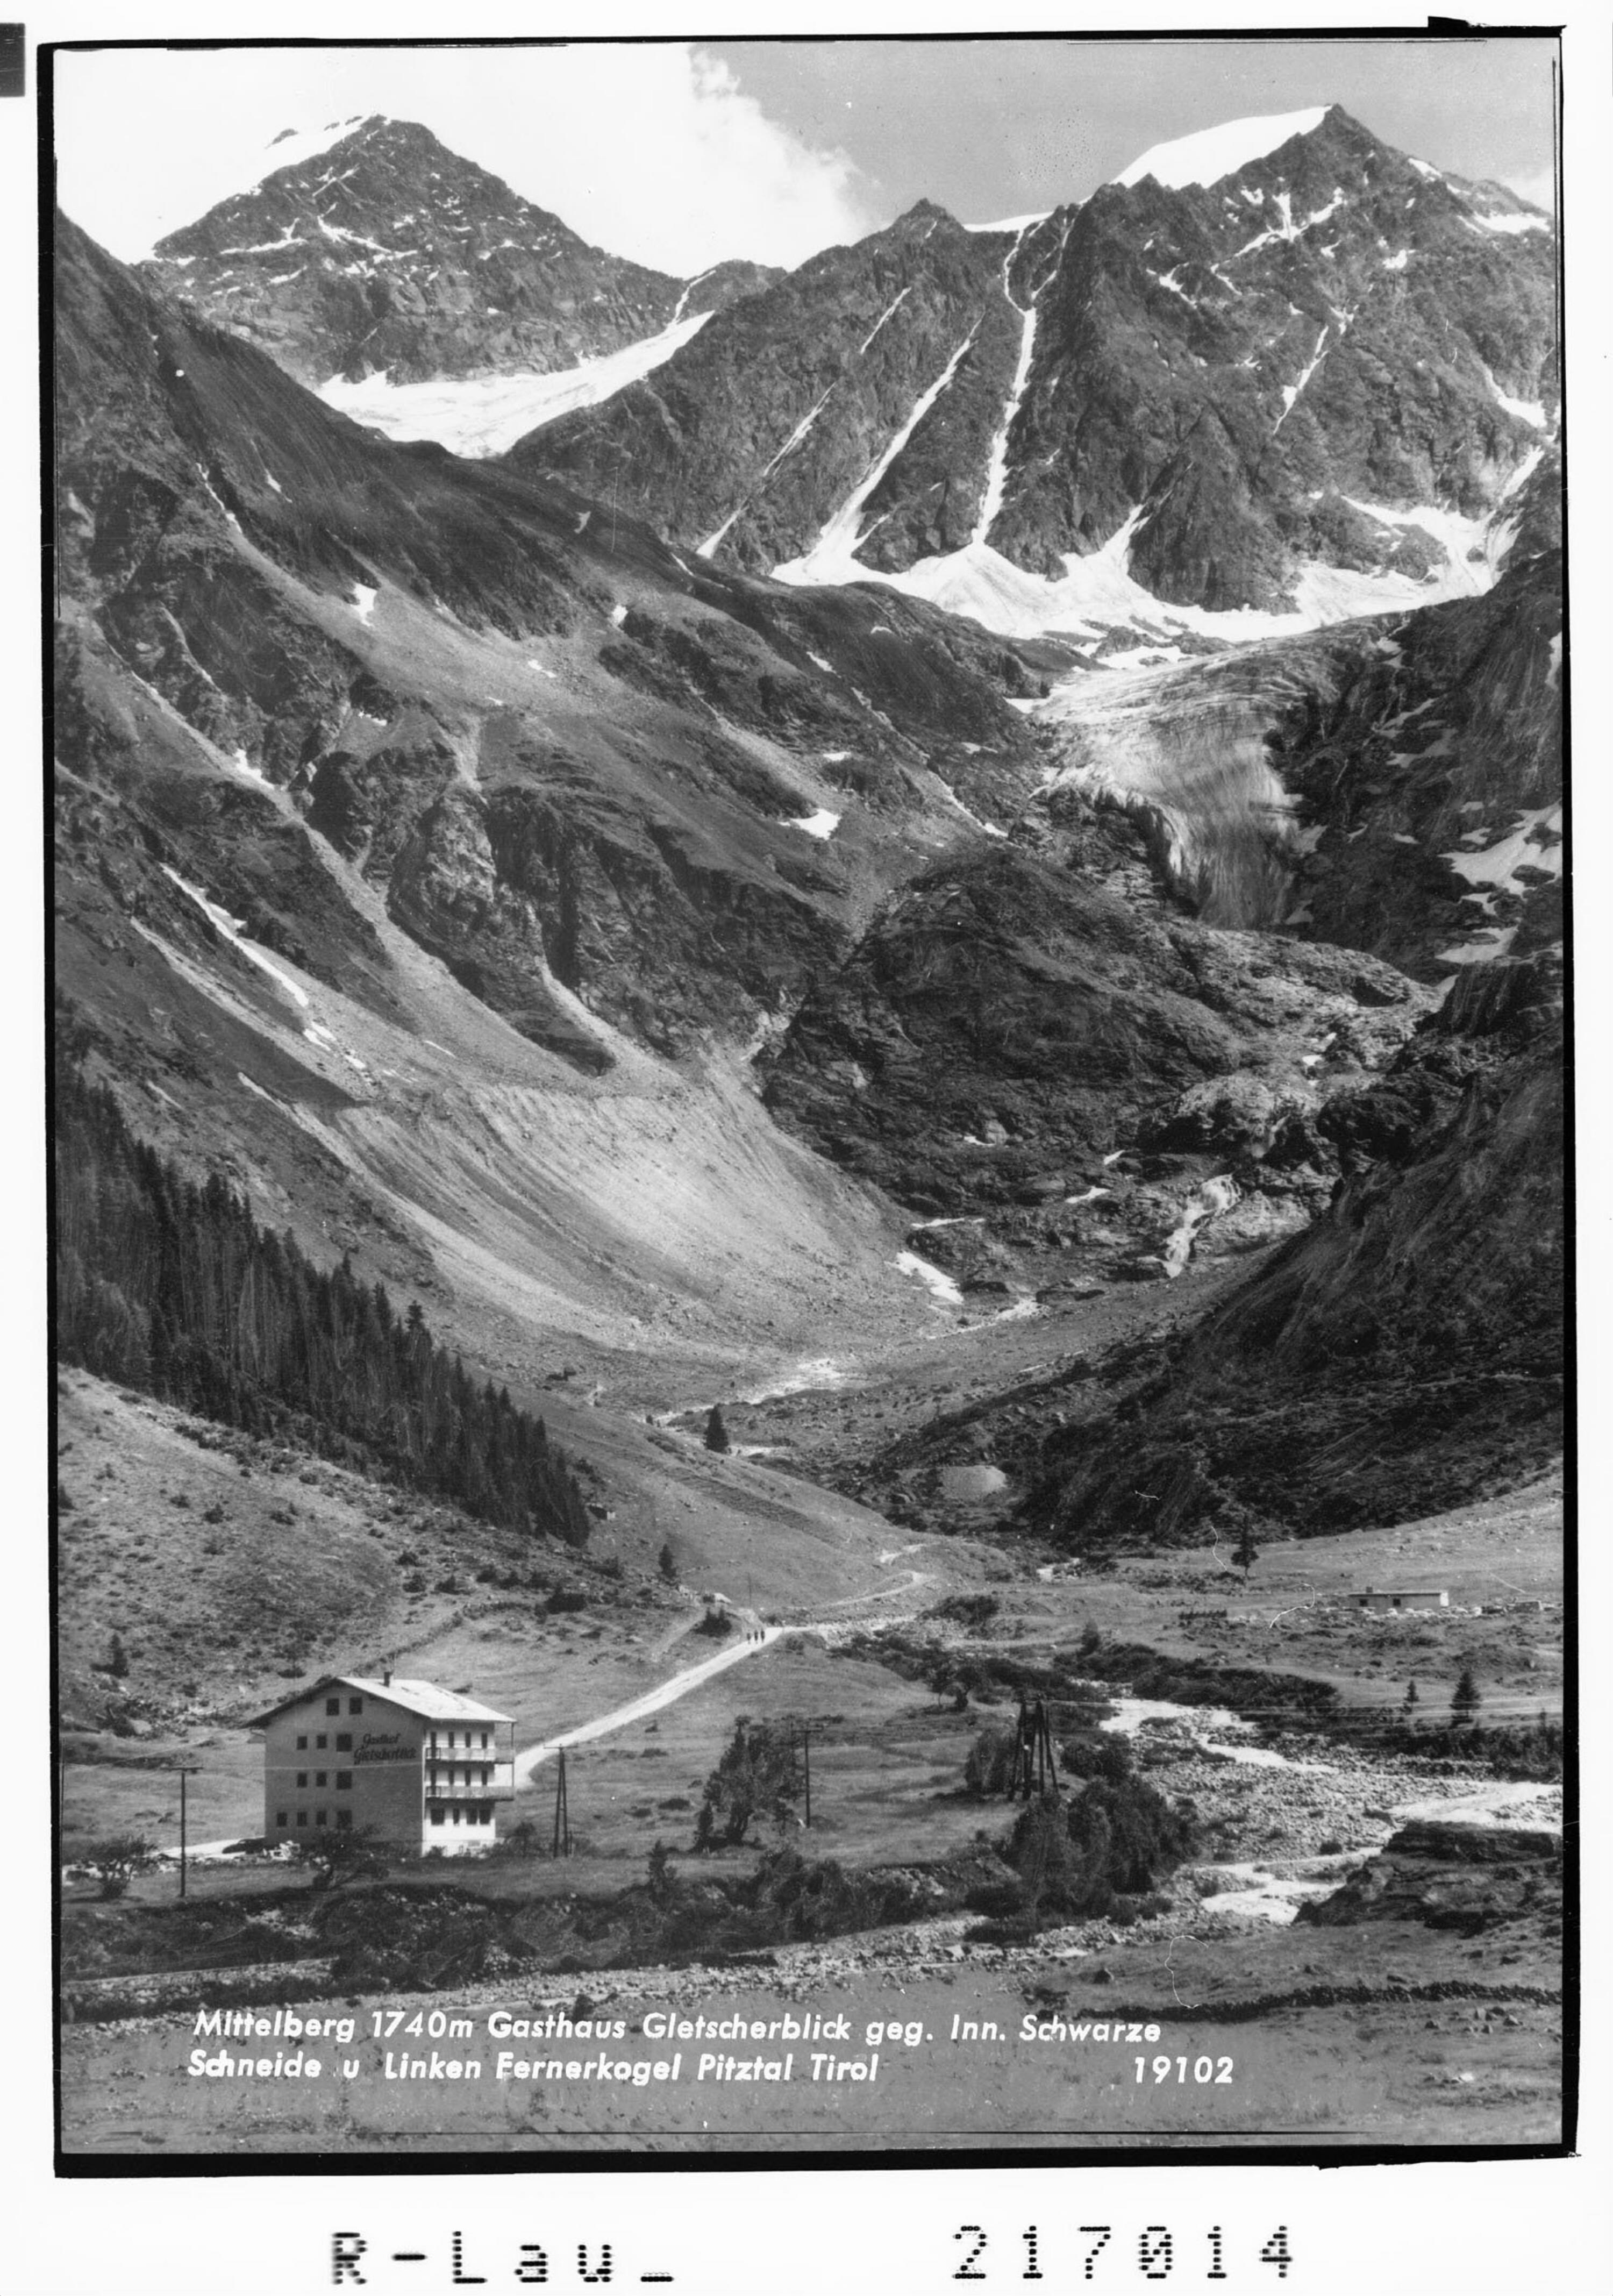 Mittelberg 1720 m / Gasthaus Gletscherblick gegen Innerer Schwarze Schneid und Linker Fernerkogel / Pitztal / Tirol></div>


    <hr>
    <div class=